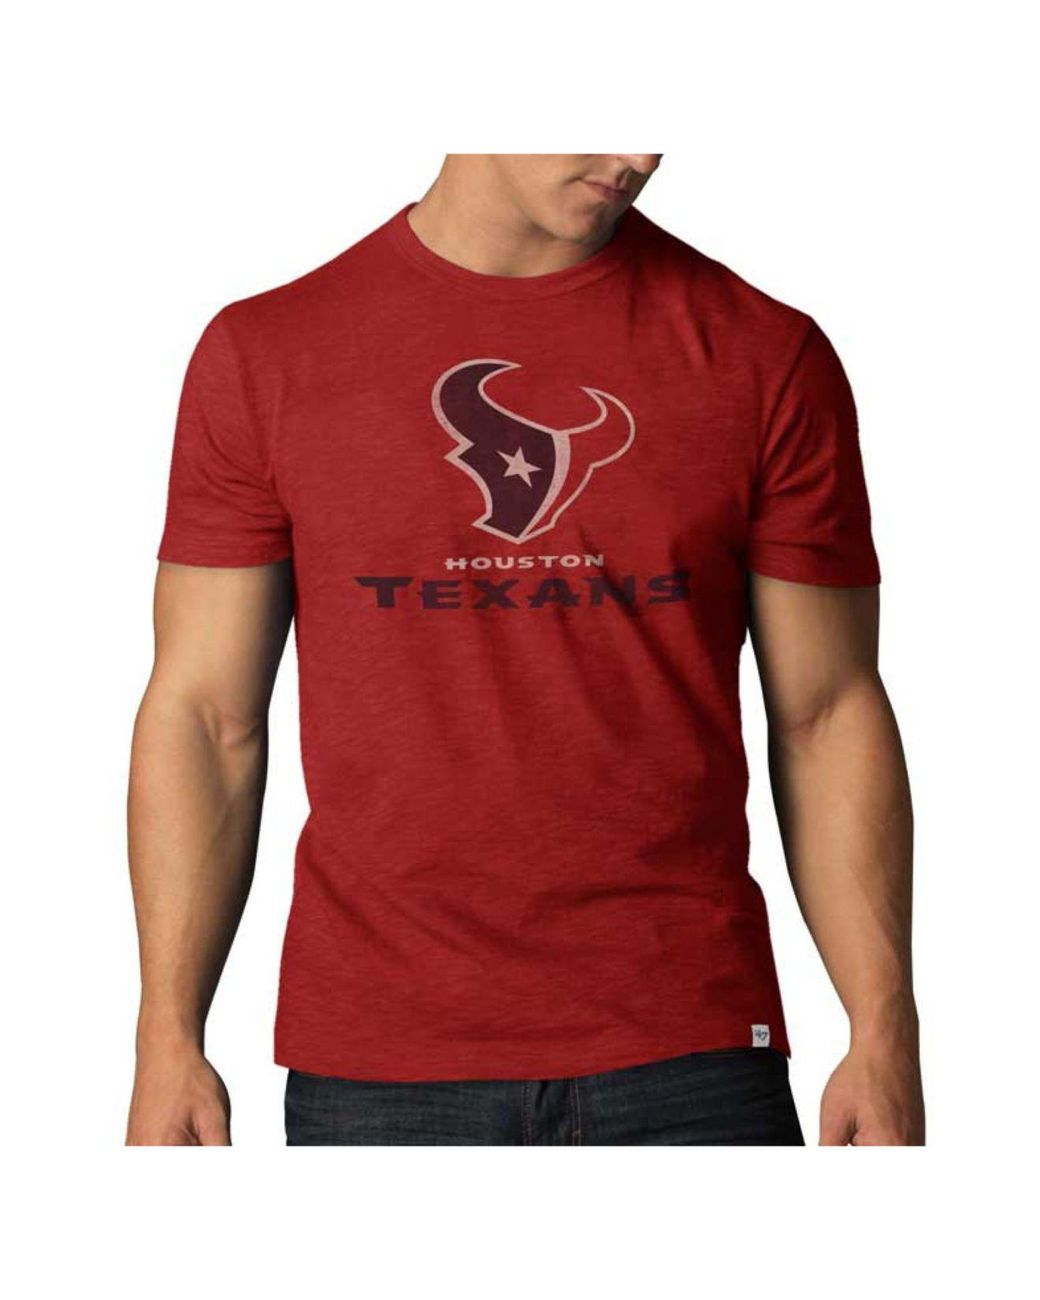 red texans shirt